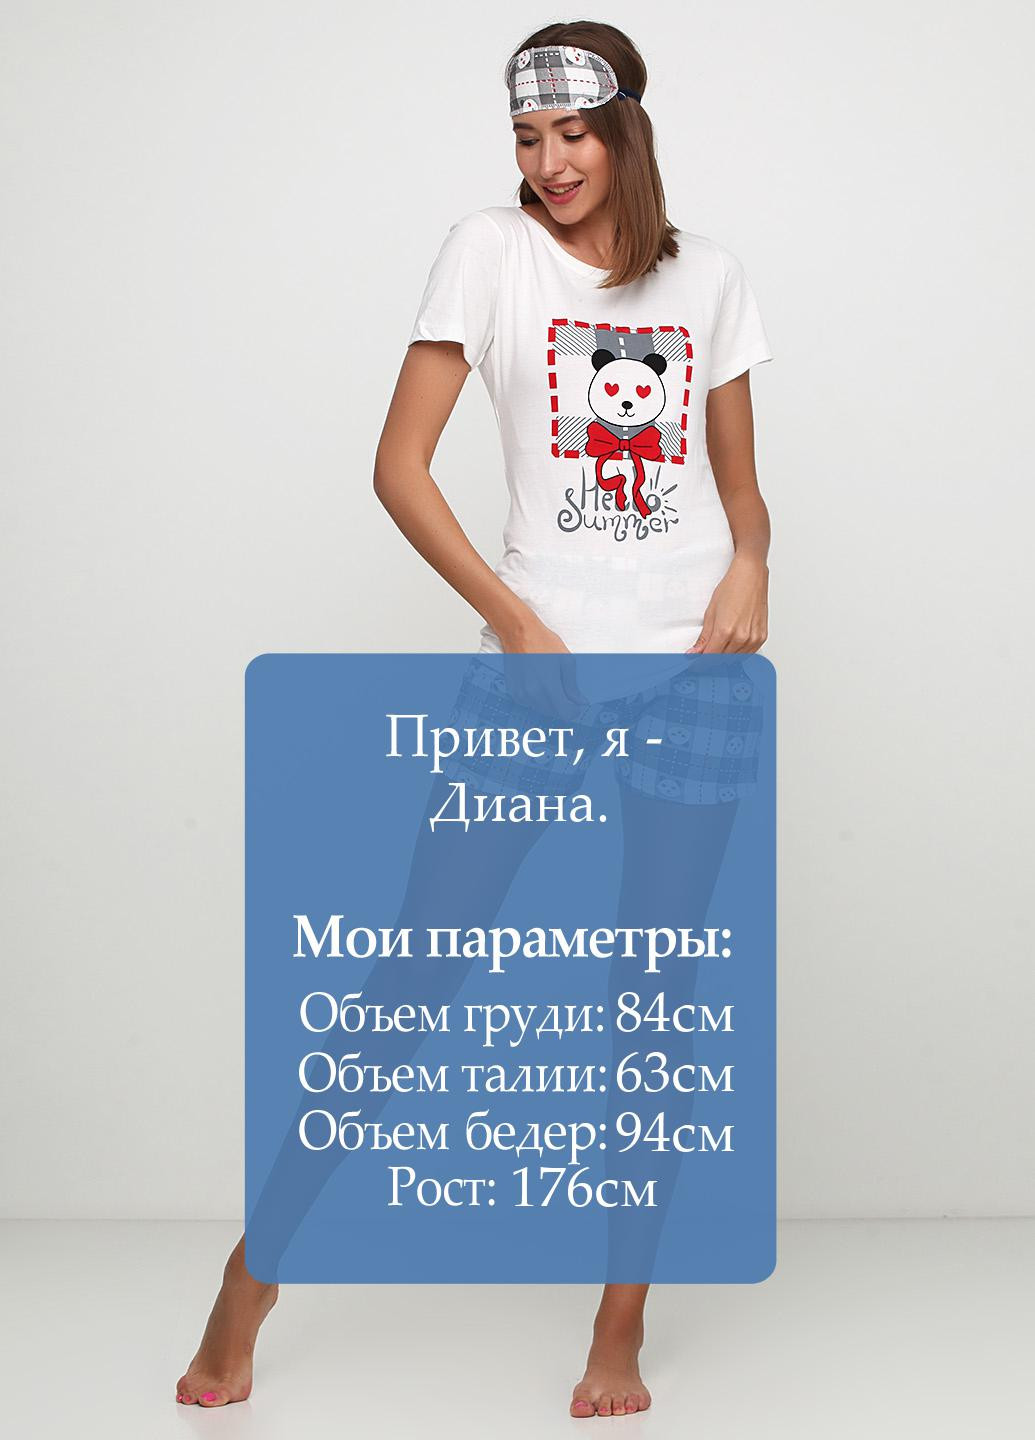 Серая всесезон пижама (футболка, шорты, маска для сна) футболка + шорты Strawberry